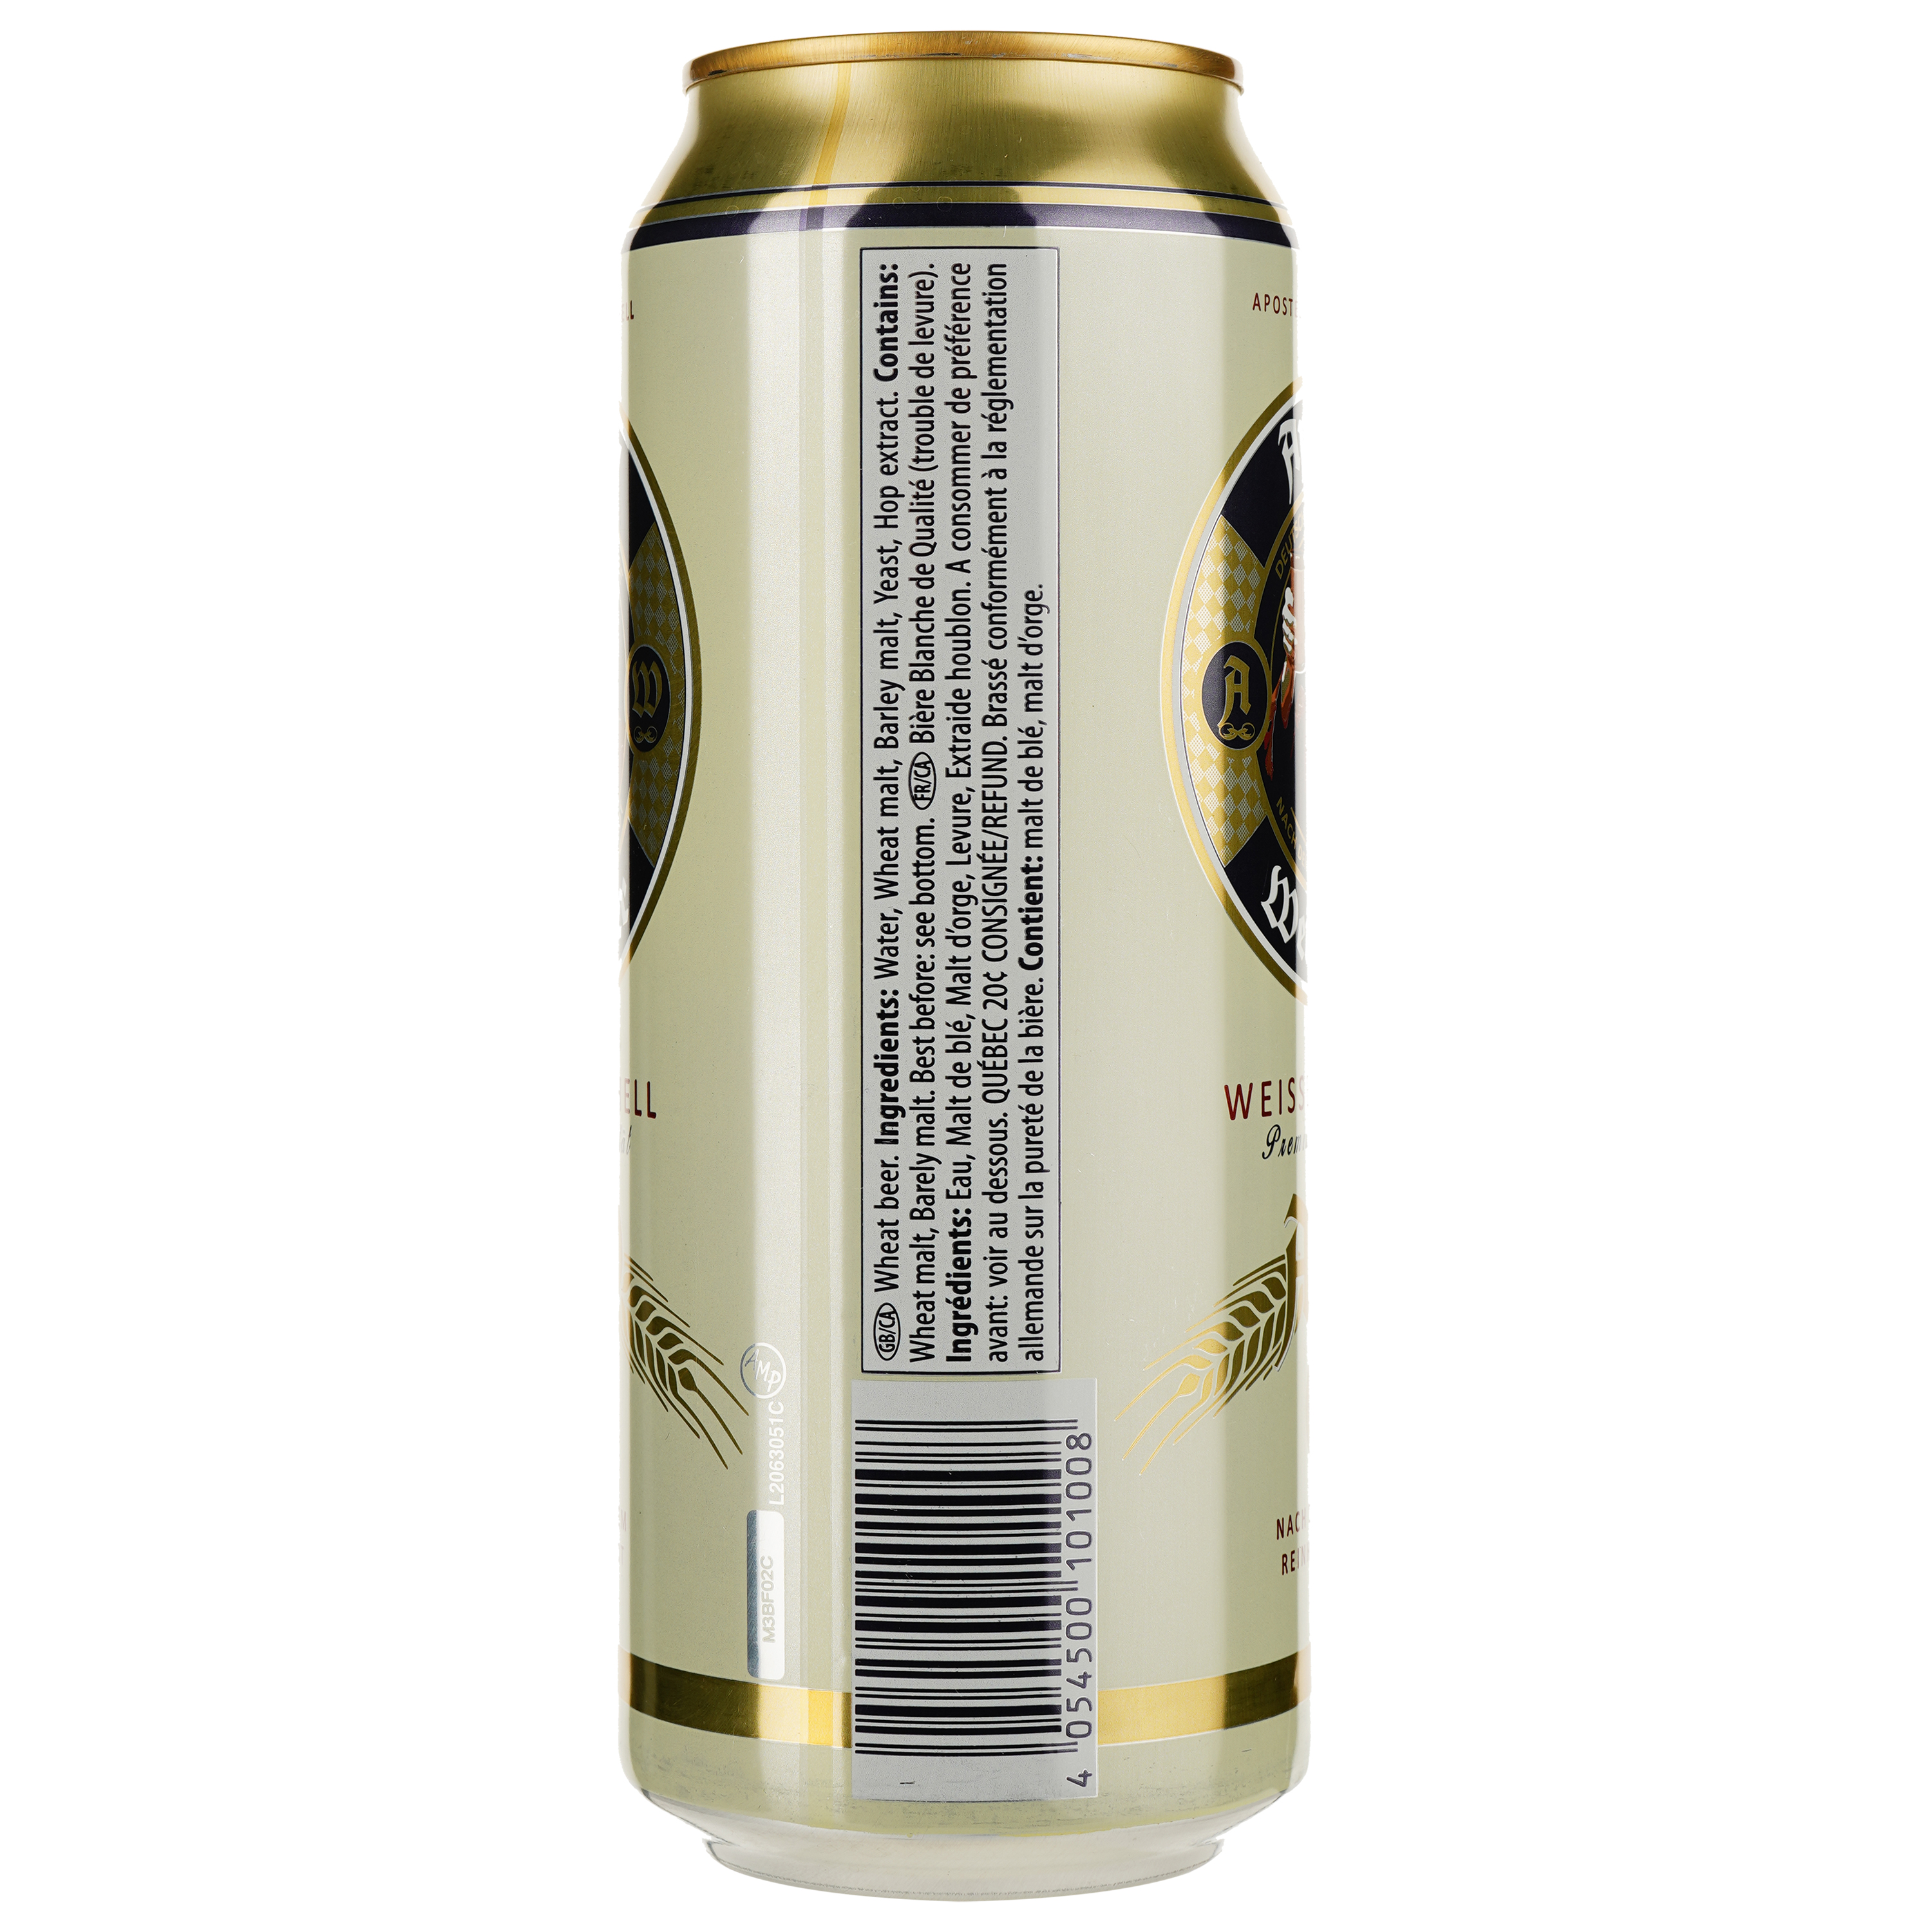 Пиво Apostel Weissbier Hell, светлое, нефильтрованное, 5% 0.5 л ж/б - фото 2